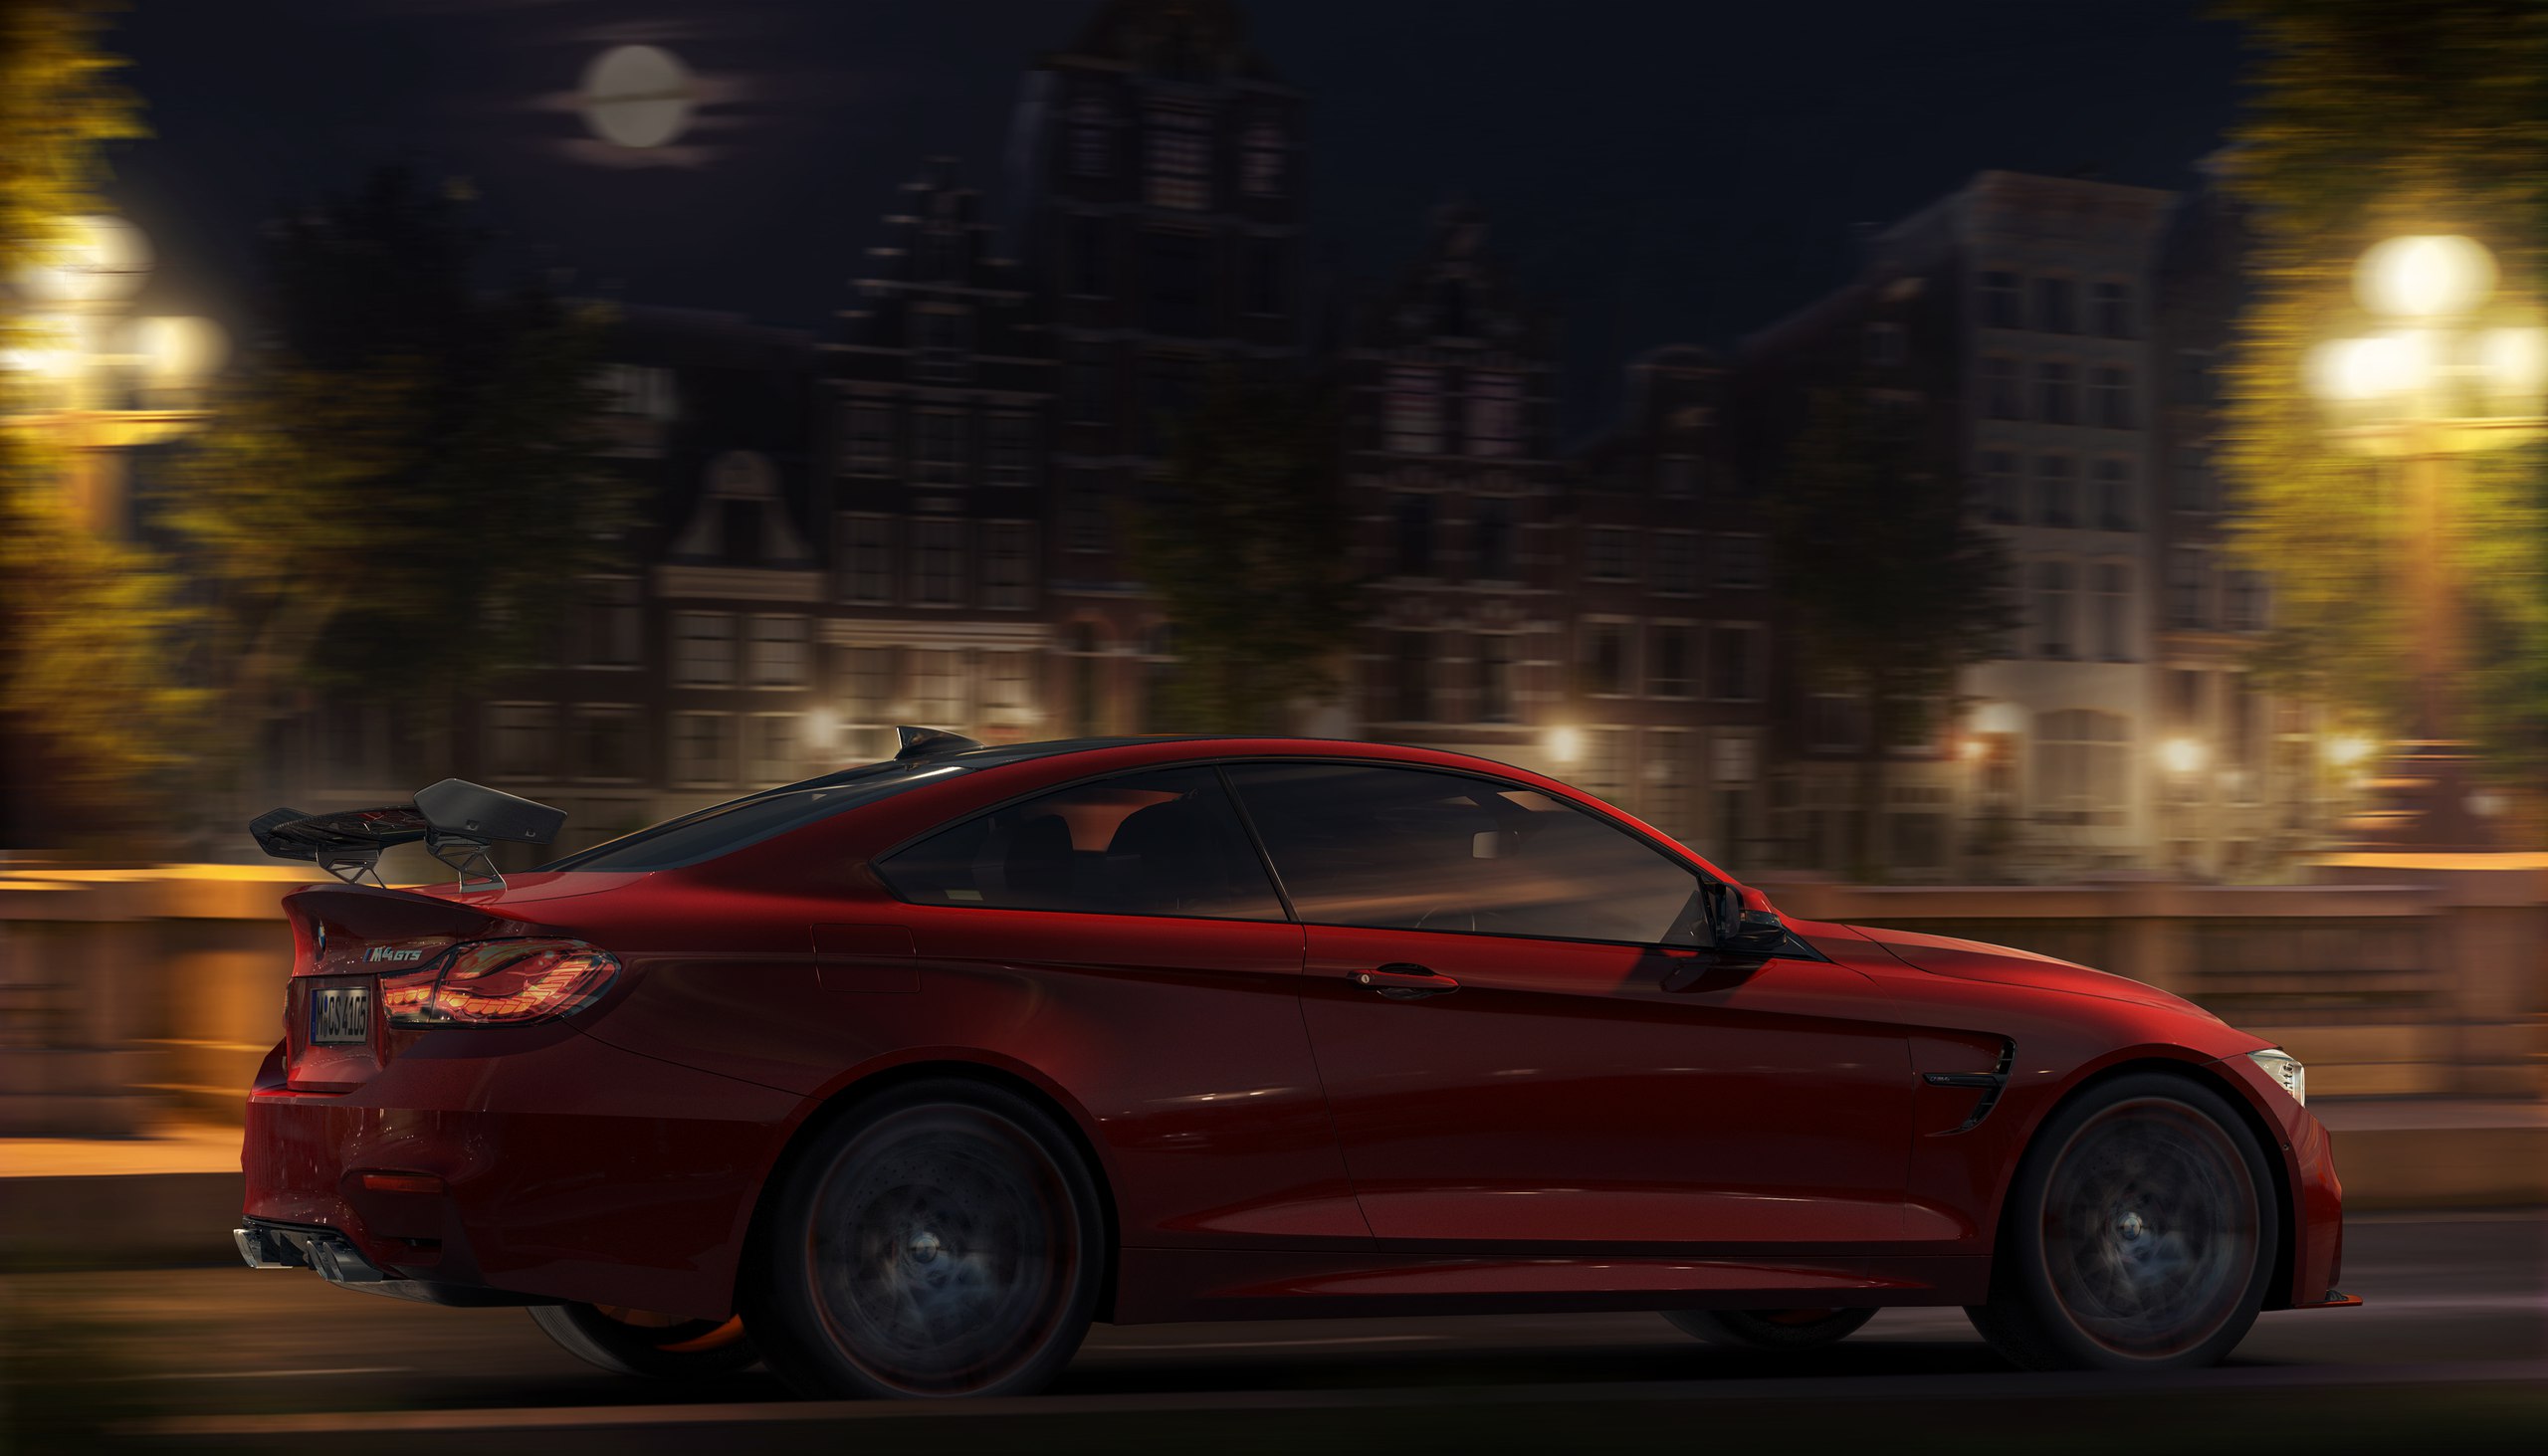 Сборка машины и фона с ночным освещением